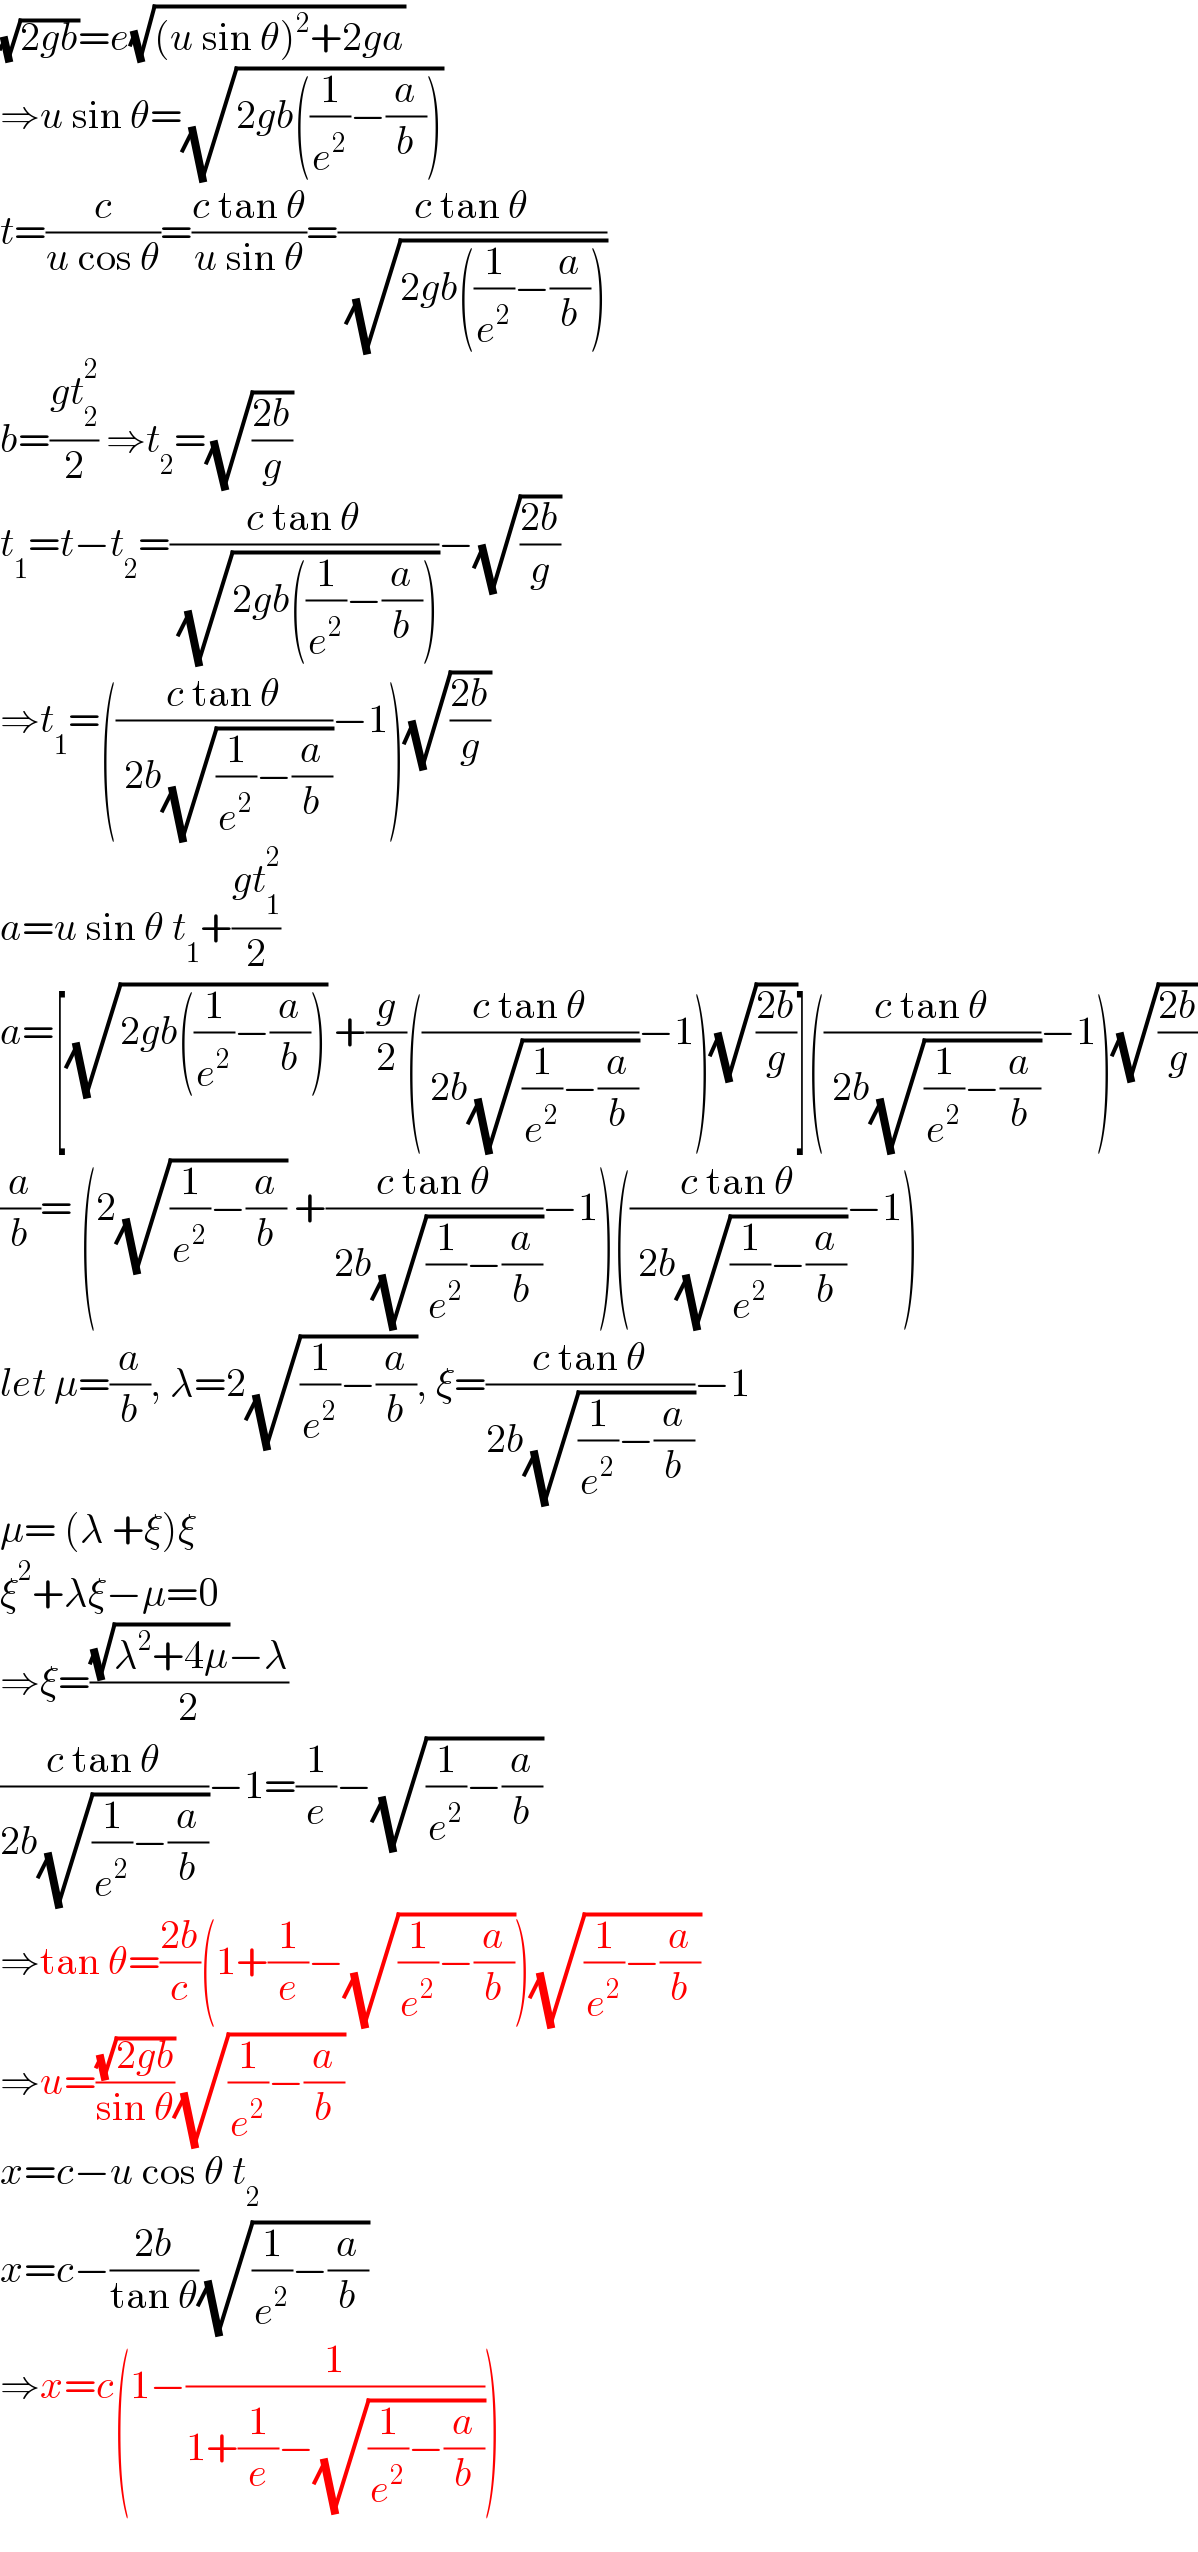 (√(2gb))=e(√((u sin θ)^2 +2ga))  ⇒u sin θ=(√(2gb((1/e^2 )−(a/b))))  t=(c/(u cos θ))=((c tan θ)/(u sin θ))=((c tan θ)/( (√(2gb((1/e^2 )−(a/b))))))  b=((gt_2 ^2 )/2) ⇒t_2 =(√((2b)/g))  t_1 =t−t_2 =((c tan θ)/( (√(2gb((1/e^2 )−(a/b))))))−(√((2b)/g))  ⇒t_1 =(((c tan θ)/( 2b(√((1/e^2 )−(a/b)))))−1)(√((2b)/g))  a=u sin θ t_1 +((gt_1 ^2 )/2)  a=[(√(2gb((1/e^2 )−(a/b)))) +(g/2)(((c tan θ)/( 2b(√((1/e^2 )−(a/b)))))−1)(√((2b)/g))](((c tan θ)/( 2b(√((1/e^2 )−(a/b)))))−1)(√((2b)/g))  (a/b)= (2(√((1/e^2 )−(a/b))) +((c tan θ)/( 2b(√((1/e^2 )−(a/b)))))−1)(((c tan θ)/( 2b(√((1/e^2 )−(a/b)))))−1)  let μ=(a/b), λ=2(√((1/e^2 )−(a/b))), ξ=((c tan θ)/(2b(√((1/e^2 )−(a/b)))))−1  μ= (λ +ξ)ξ  ξ^2 +λξ−μ=0  ⇒ξ=(((√(λ^2 +4μ))−λ)/2)  ((c tan θ)/(2b(√((1/e^2 )−(a/b)))))−1=(1/e)−(√((1/e^2 )−(a/b)))  ⇒tan θ=((2b)/c)(1+(1/e)−(√((1/e^2 )−(a/b))))(√((1/e^2 )−(a/b)))  ⇒u=((√(2gb))/(sin θ))(√((1/e^2 )−(a/b)))  x=c−u cos θ t_2   x=c−((2b)/(tan θ))(√((1/e^2 )−(a/b)))  ⇒x=c(1−(1/(1+(1/e)−(√((1/e^2 )−(a/b))))))  